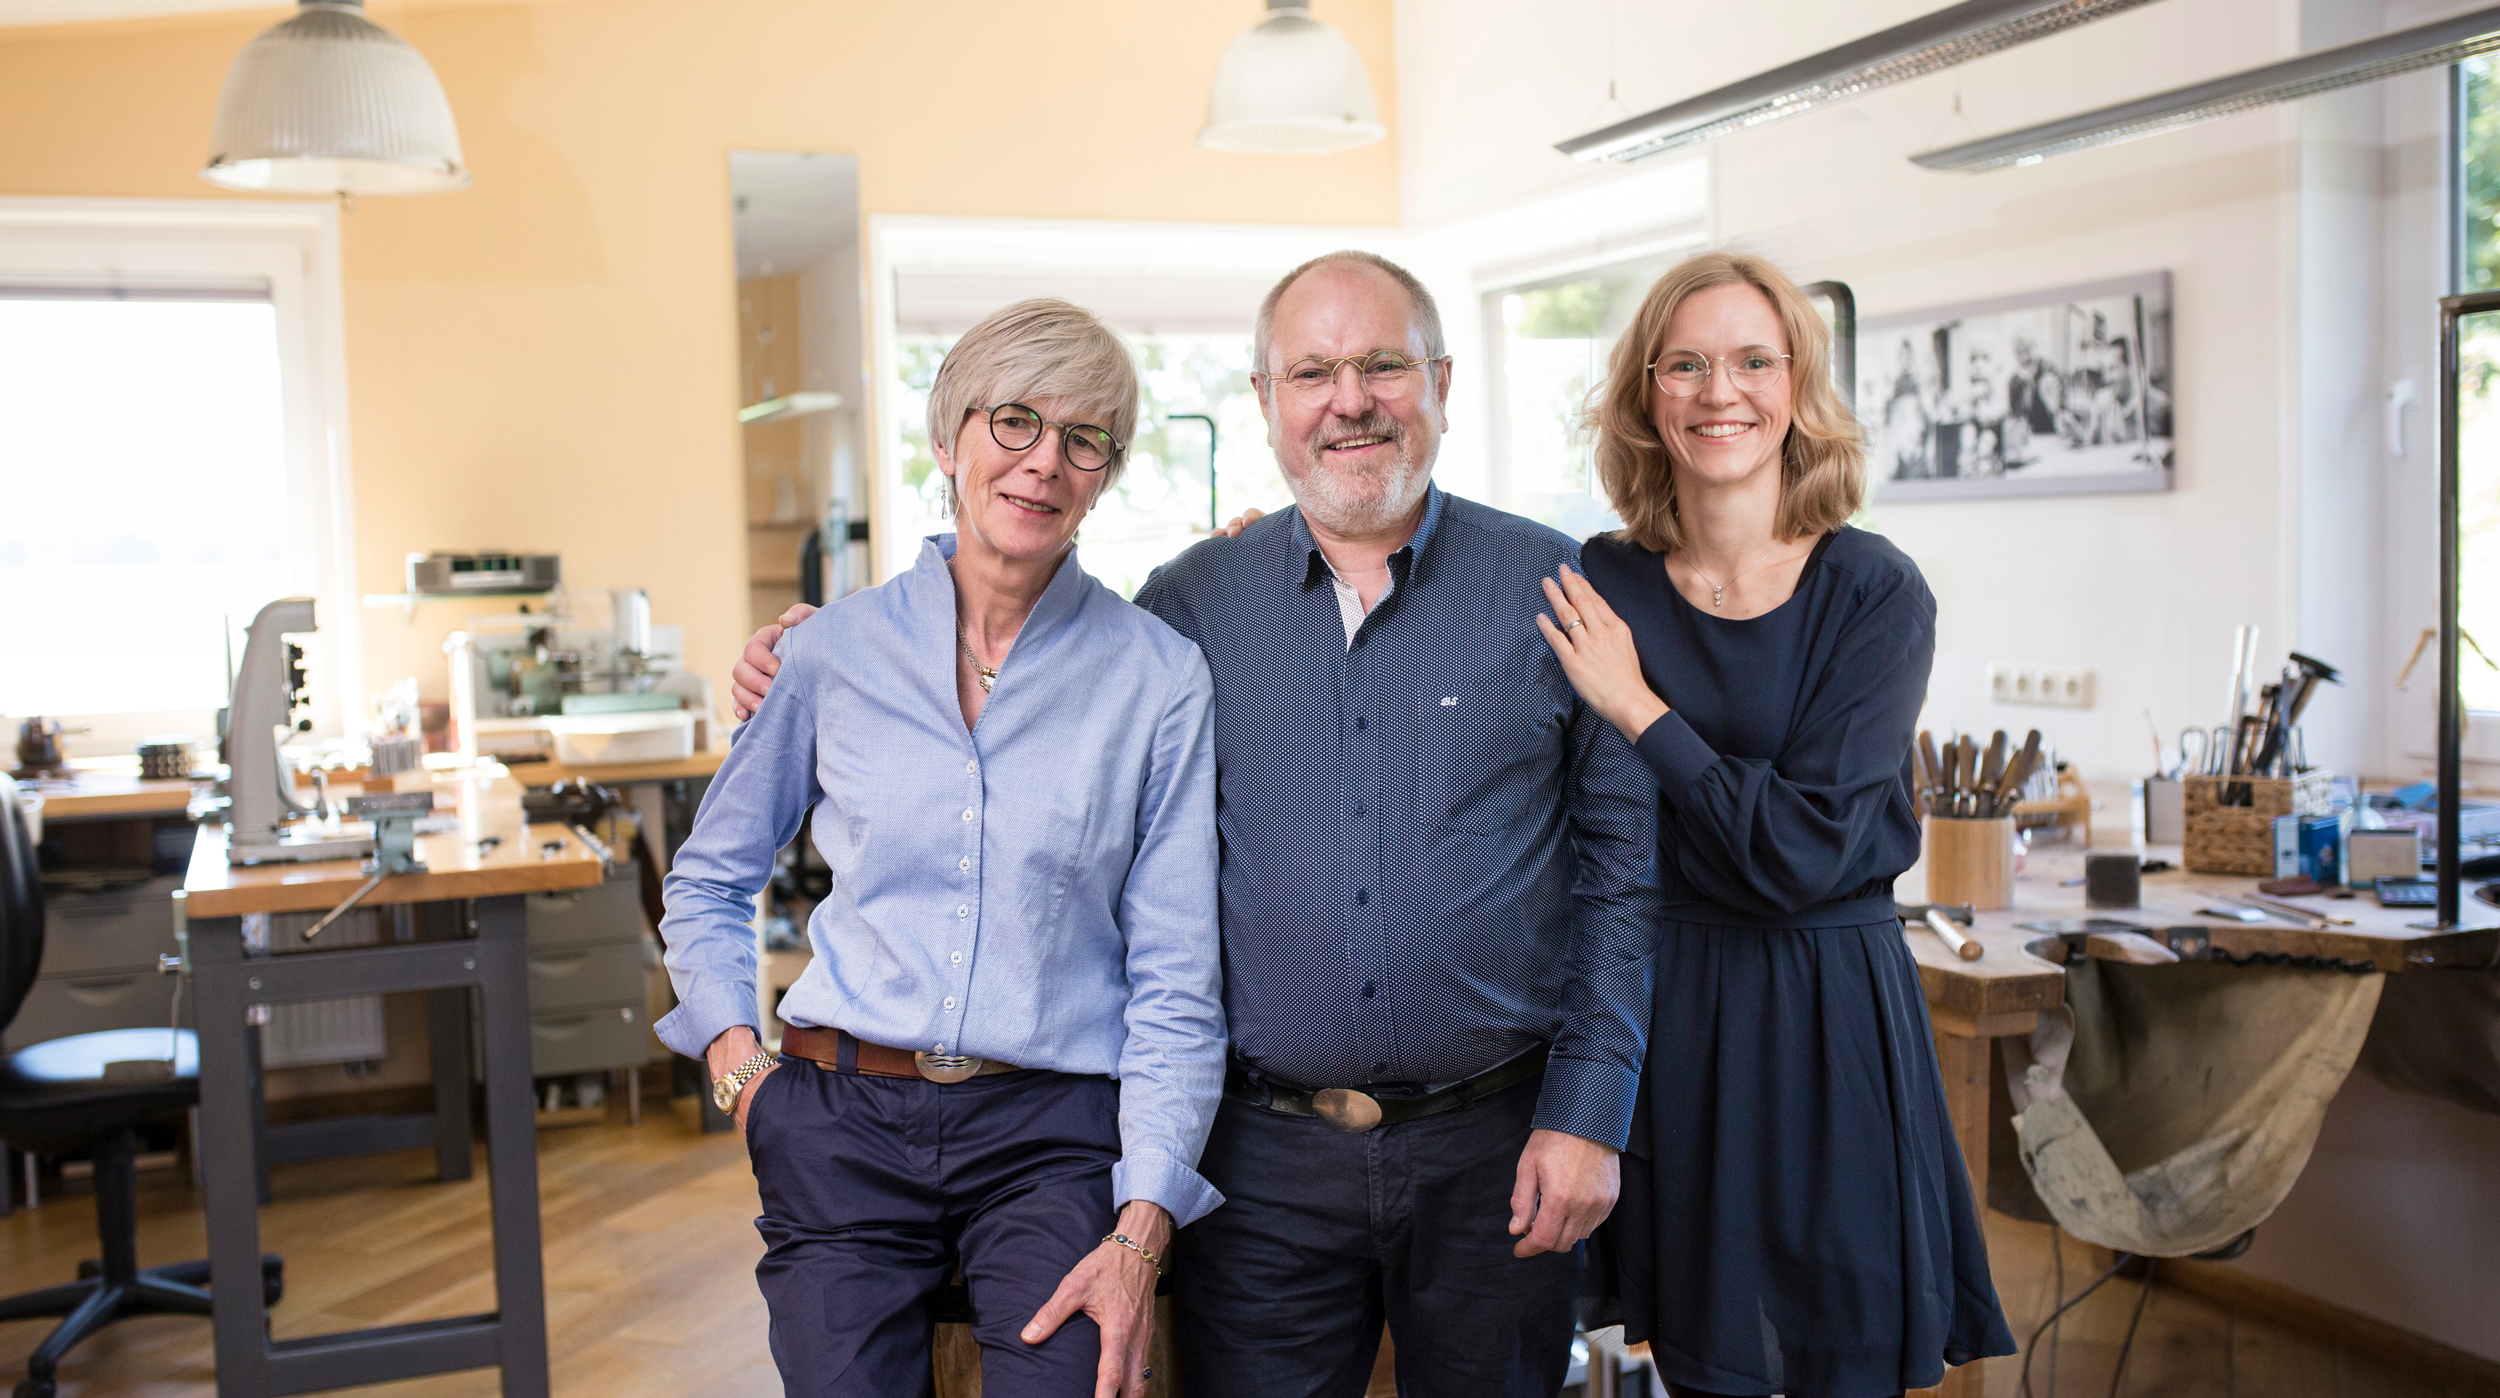 Astrid, Bernd und Katja betreiben zusammen die Goldschmiede "Die Kreativschmiede".